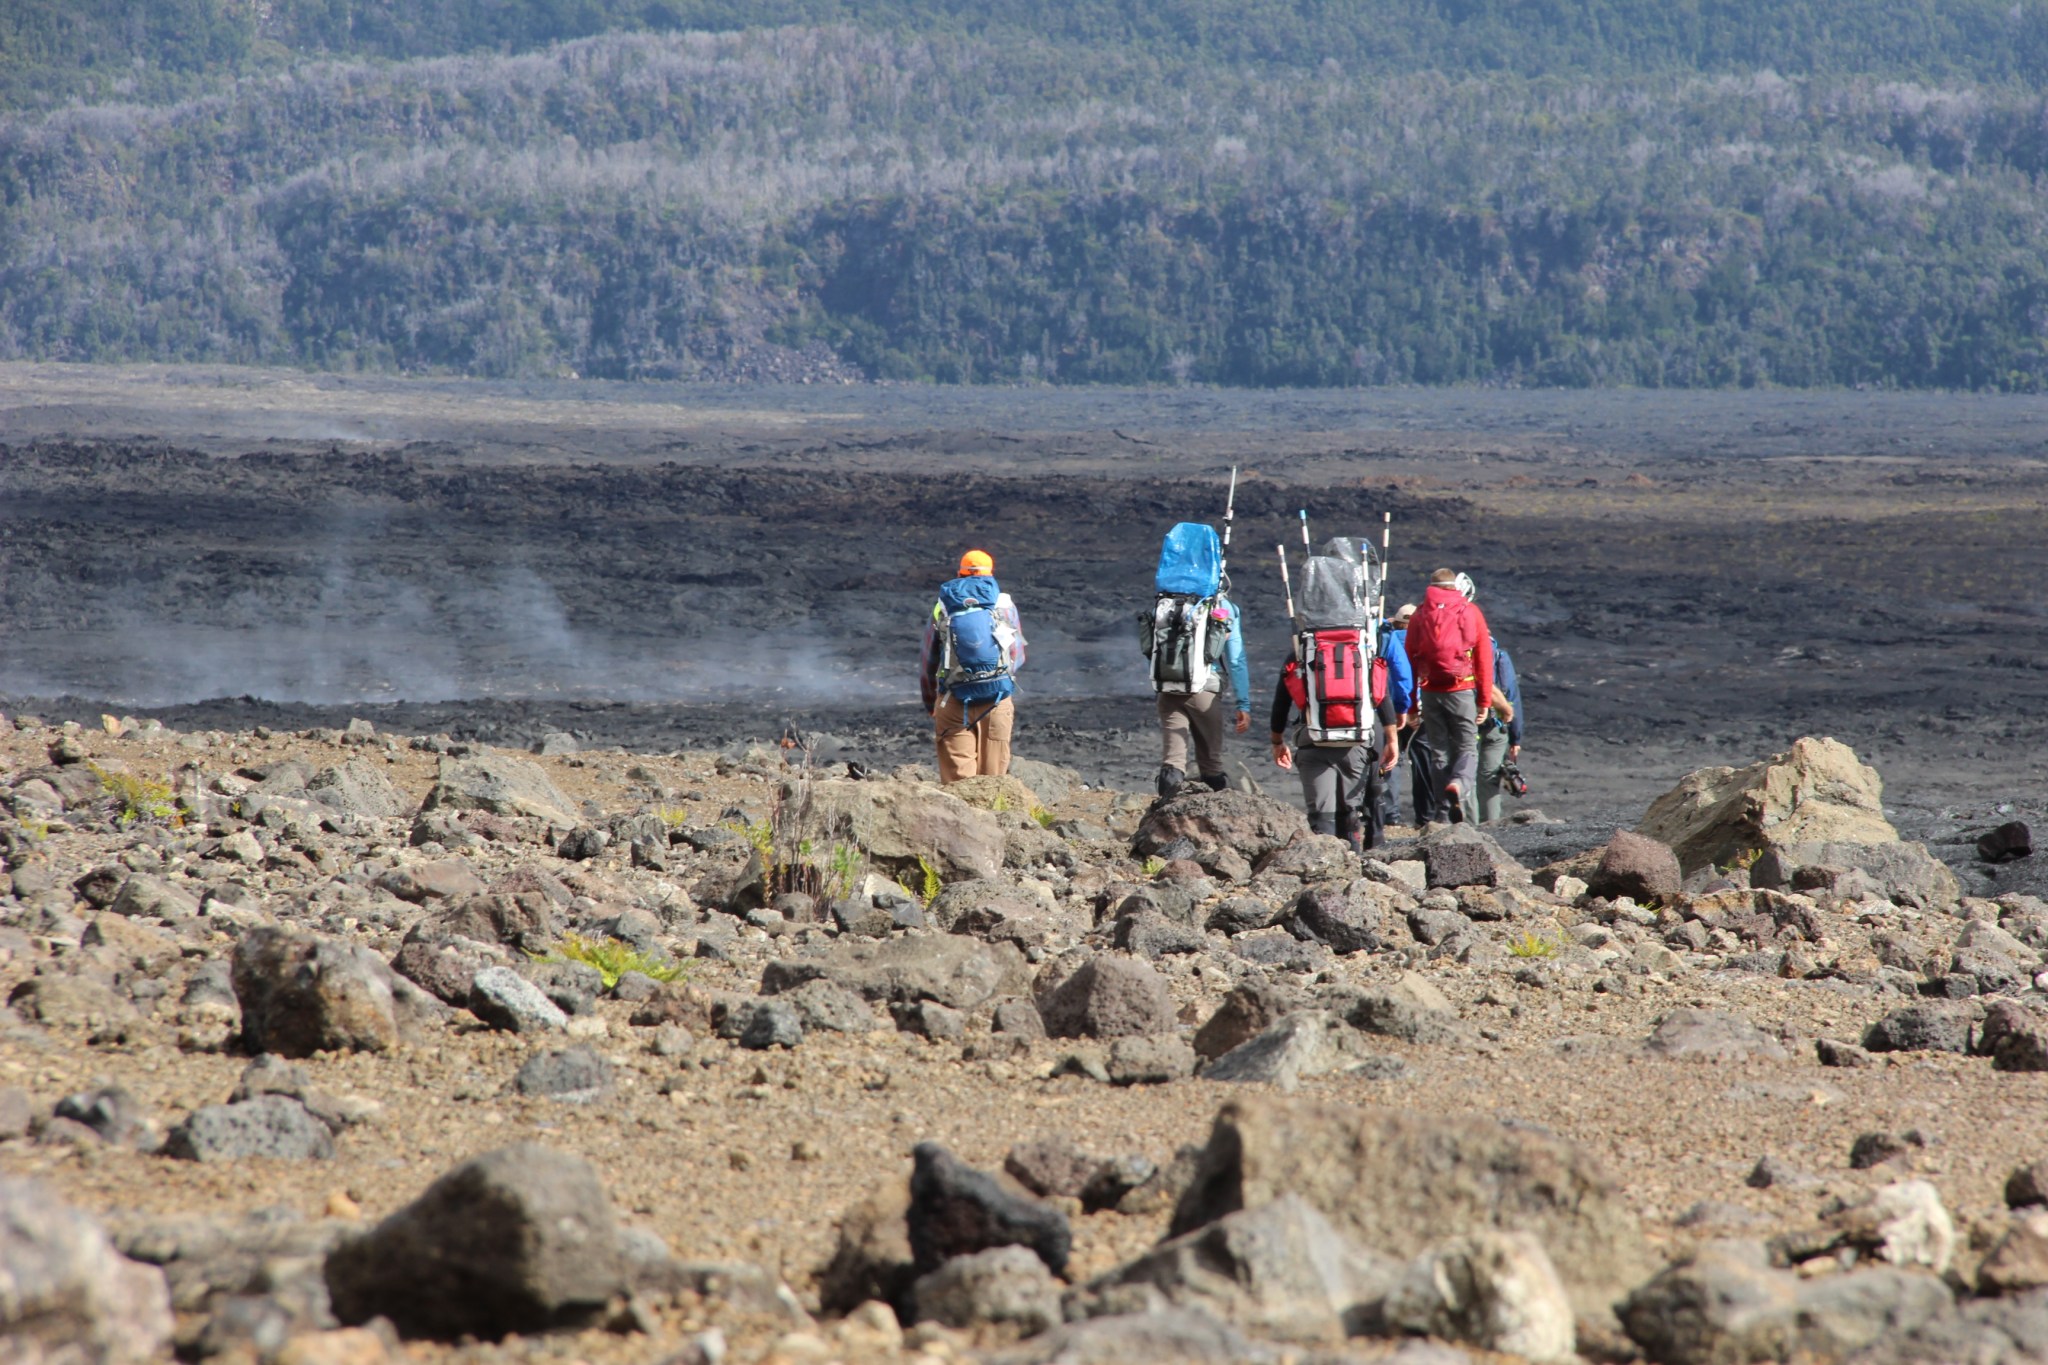 A team sets off across the lava field near Keanakakoi crater on Hawaiis Kilauea volcano.